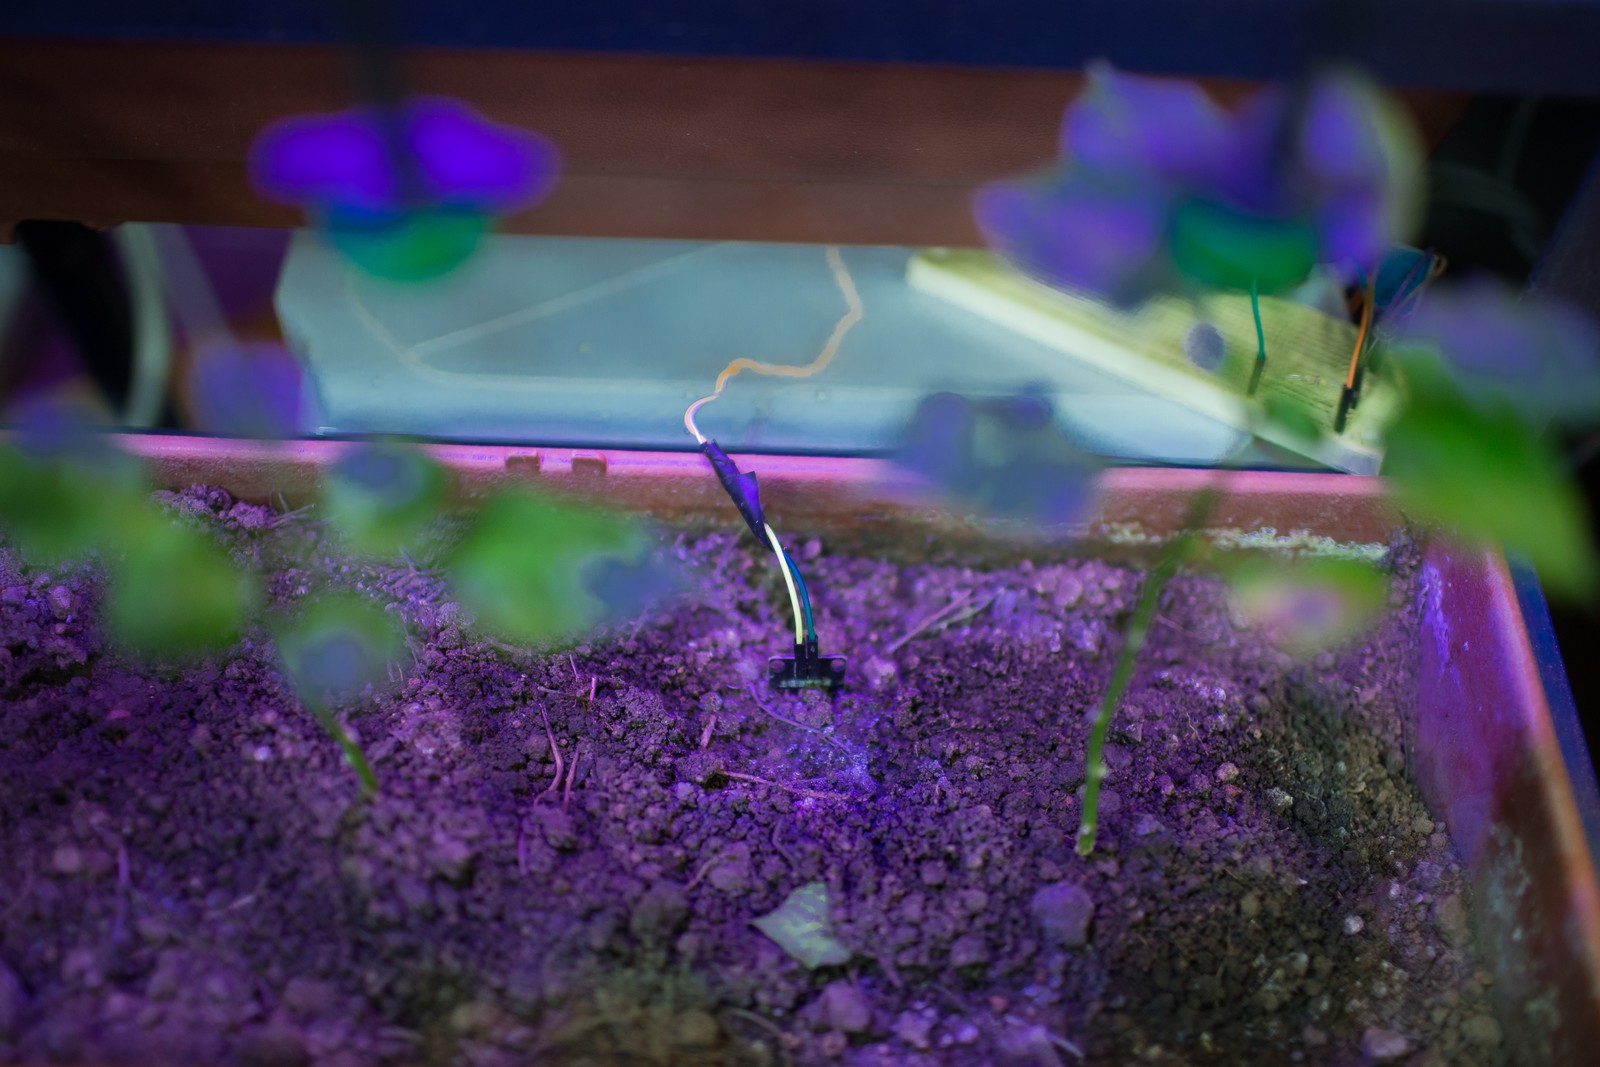 Projeto em teste também no Inatel desenvolve planta que cresce melhor com iluminação artificial e irrigação de alta precisão com sensores de umidade na terra — Foto: Edilson Dantas / Agência O Globo